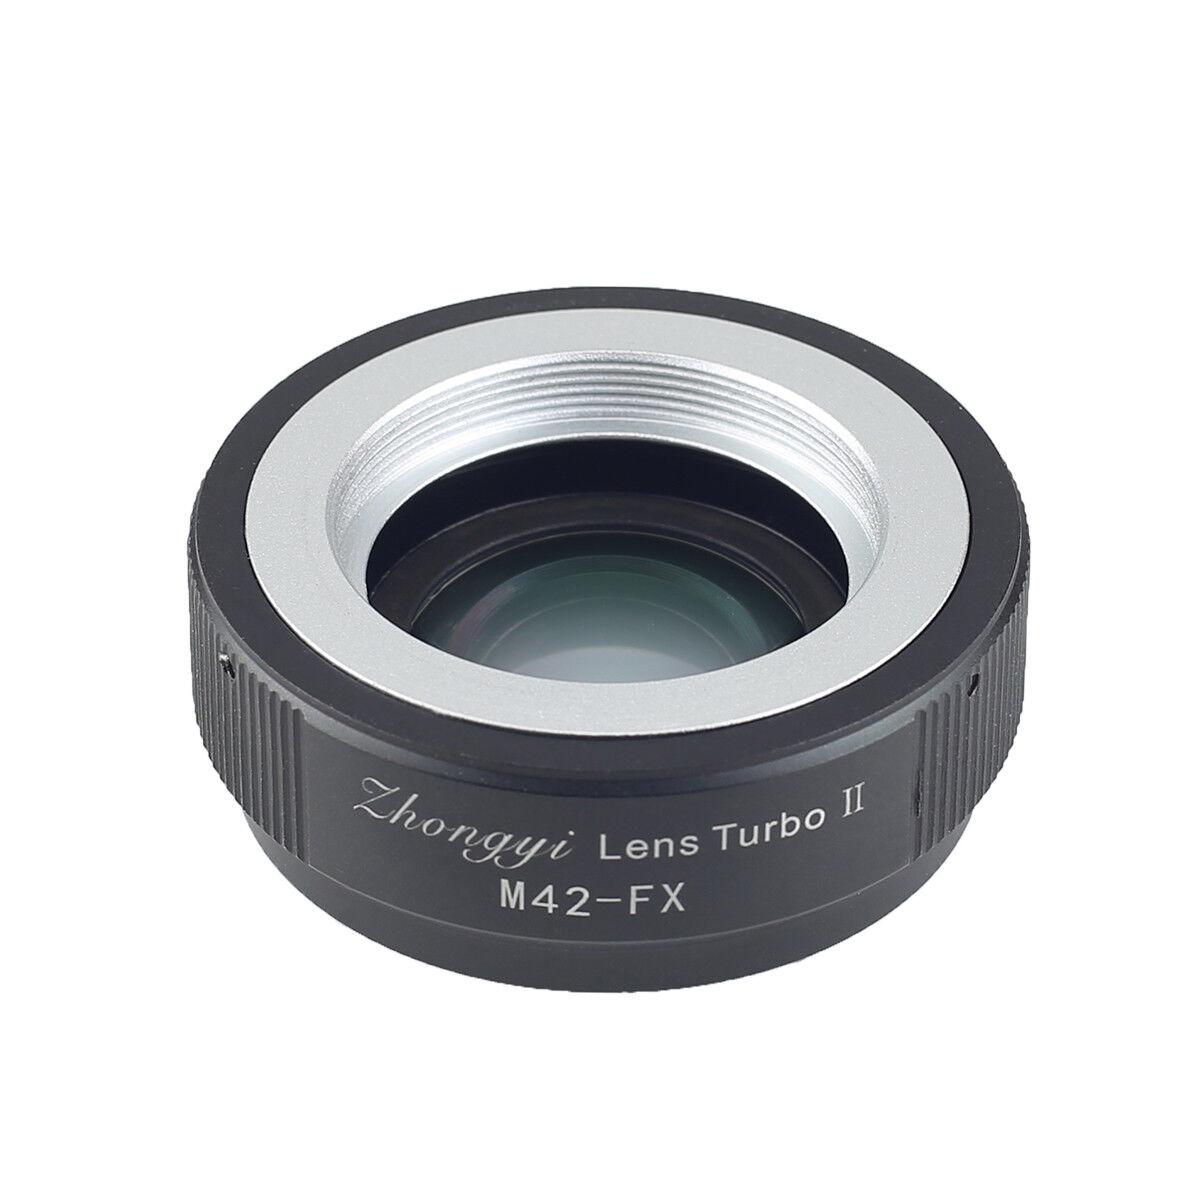 Zhongyi Lens Turbo II Adapter Reduce Focus M42  lens to FUJIFILM X XPro2  XT3 S1 ZHONGYI Does Not Apply